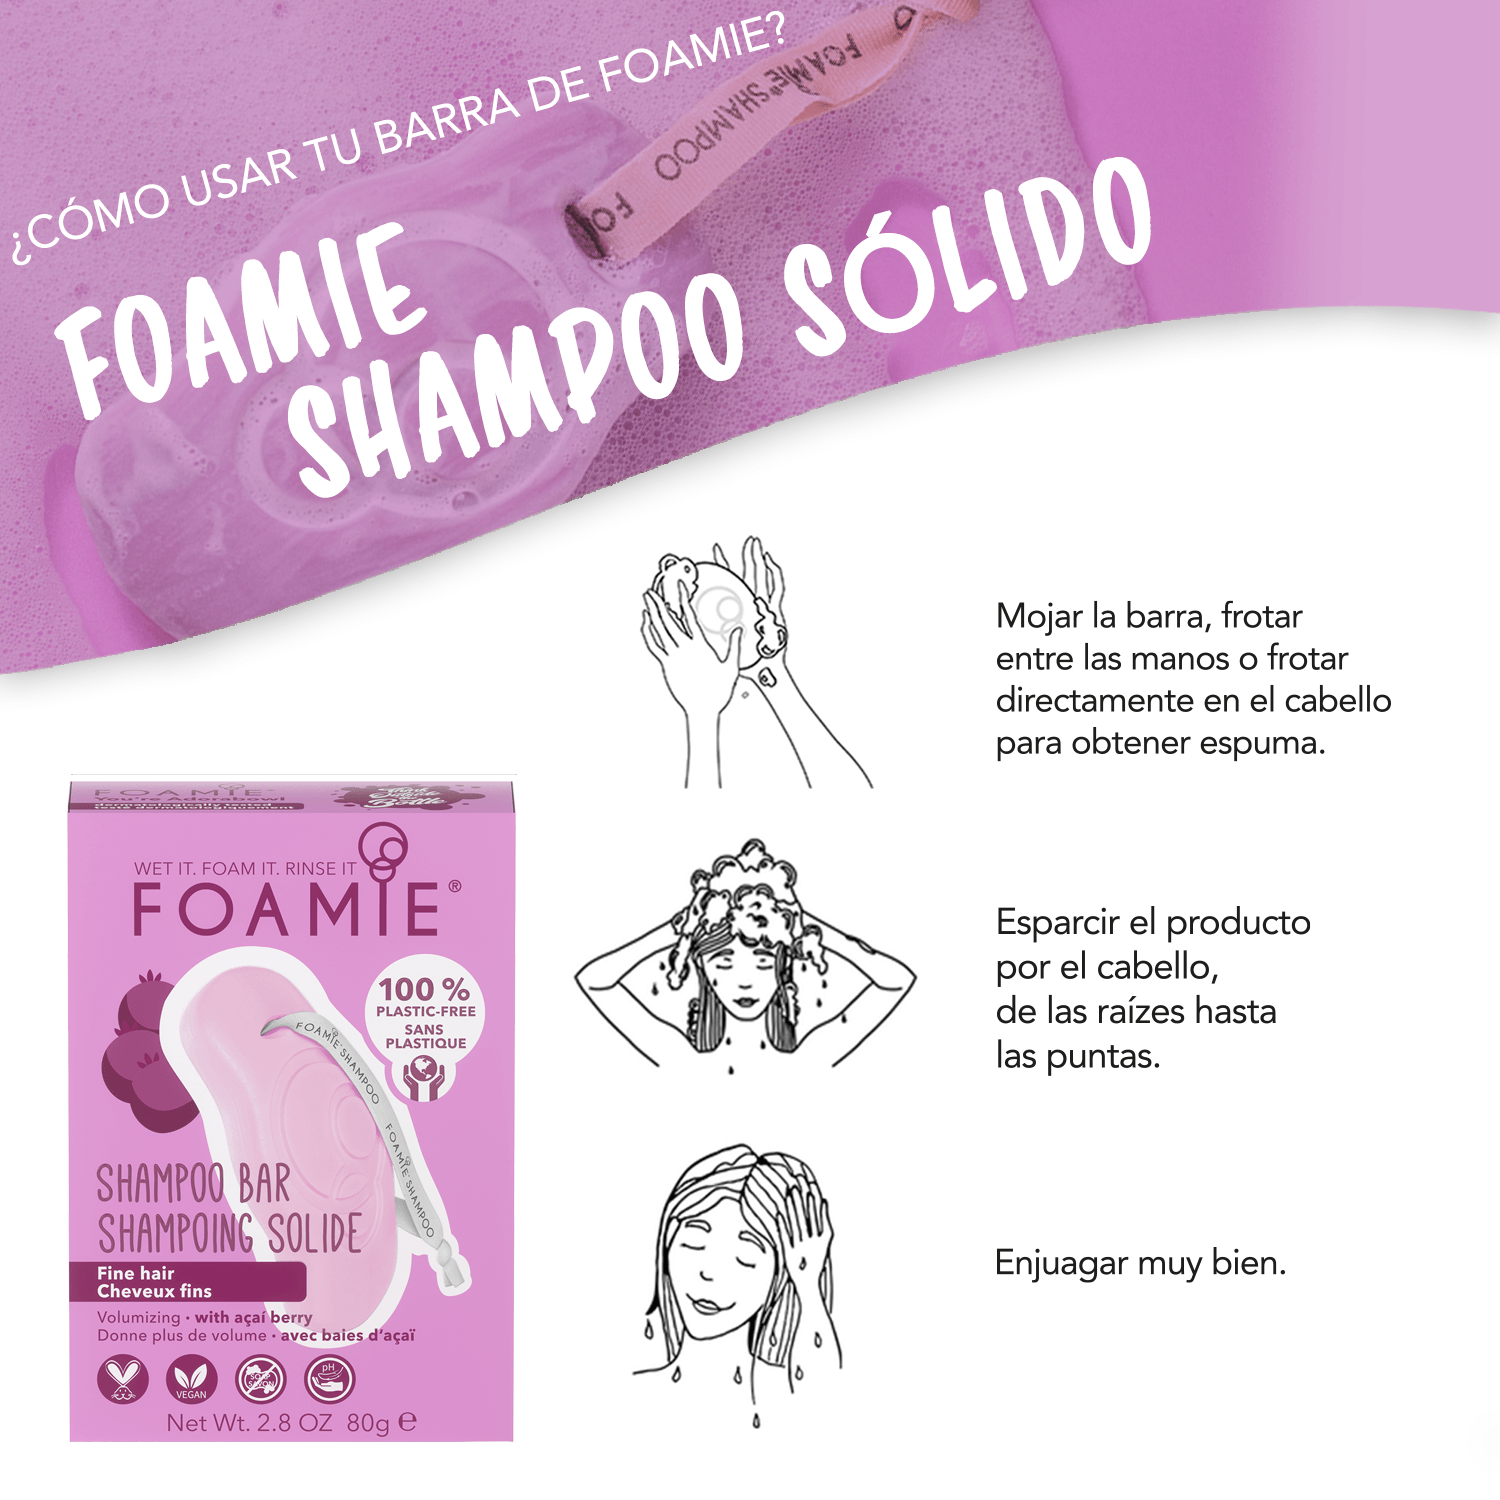 Shampoo de Baya de Acaí para cabello delgado & Jabonera Sustentable